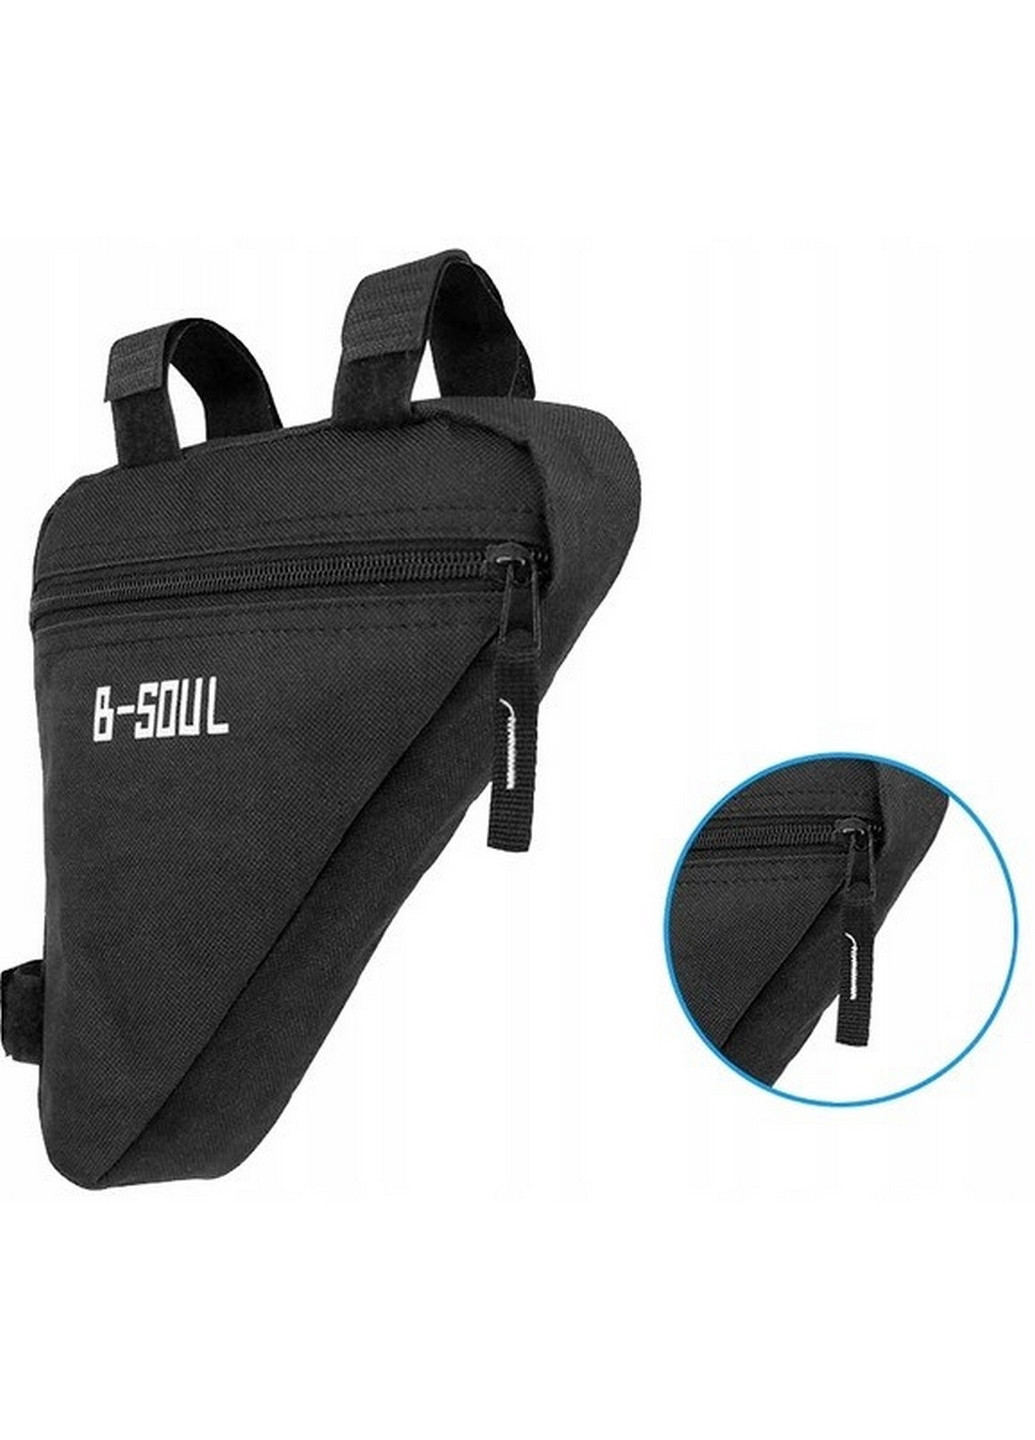 Велосипедна сумка на раму 1L 19x18x4см B-Soul (260496945)